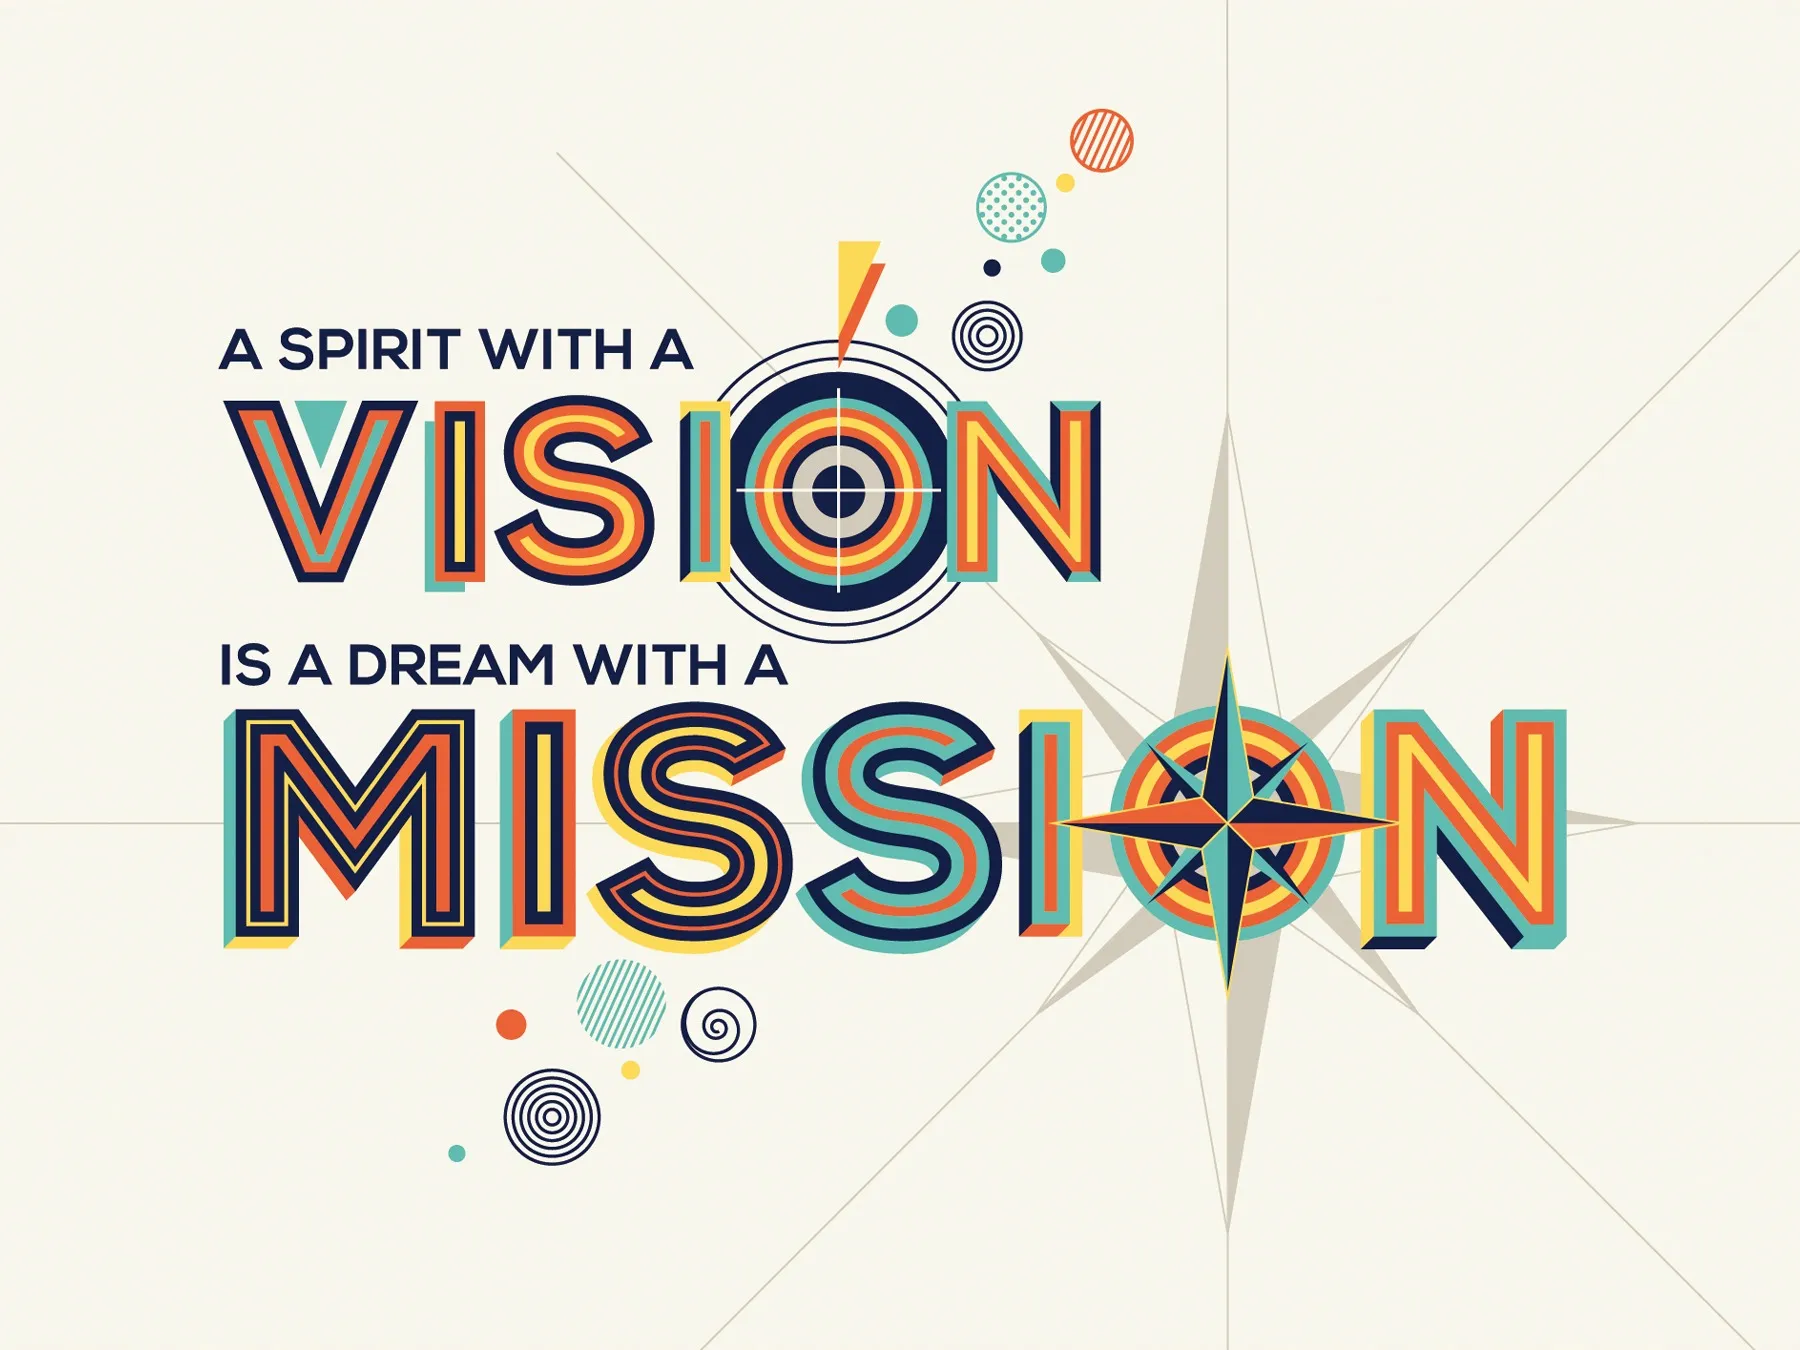 ビジョンとミッションの重要性